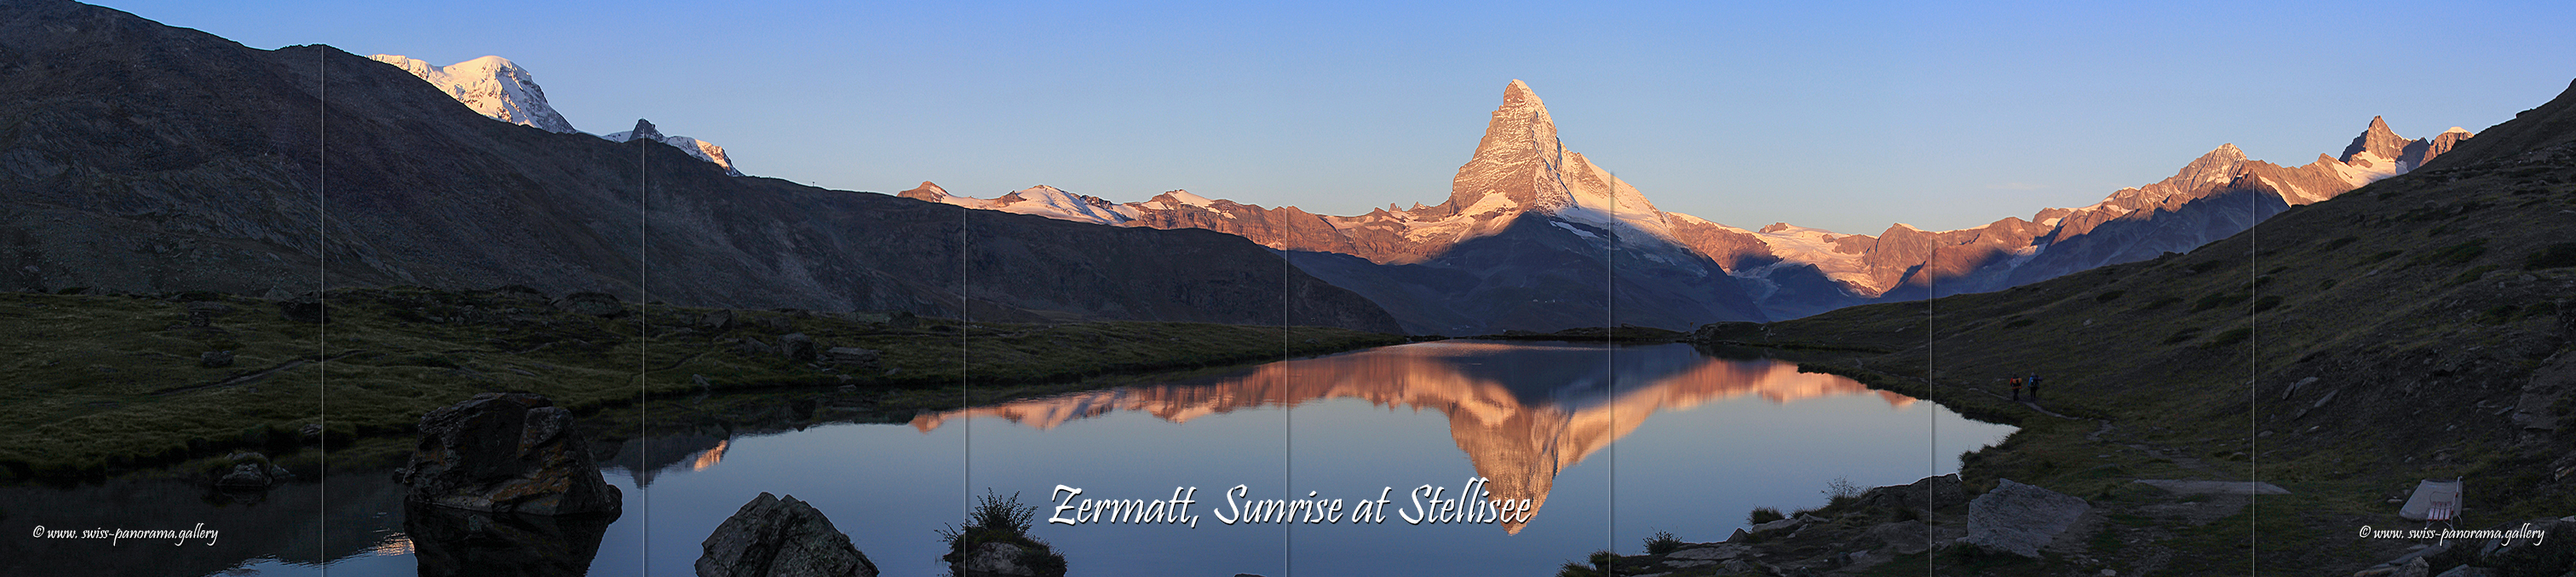 Switzerland panorama Zermatt